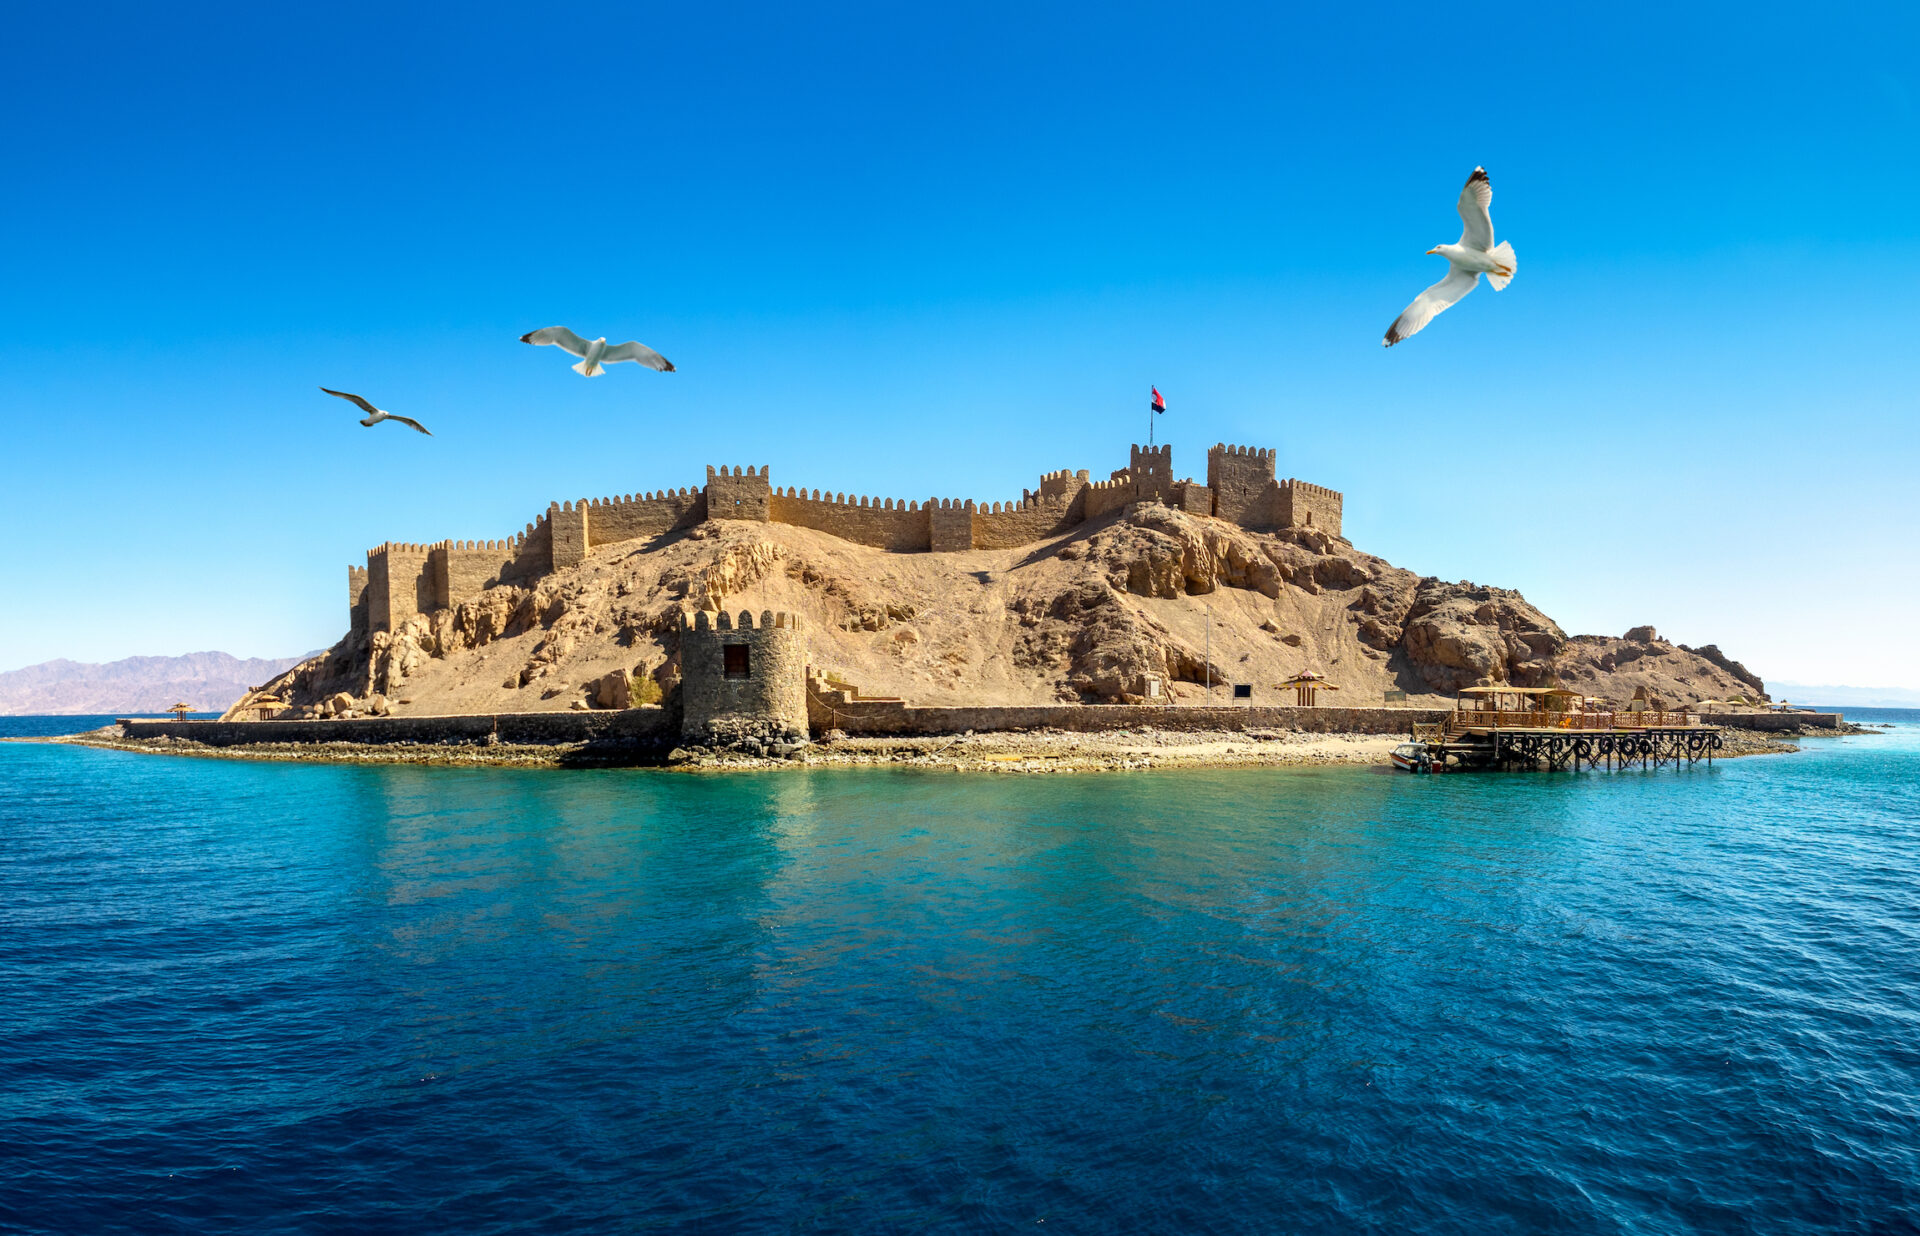 Seascape z starożytnego zamku Saladyna na wyspie Farun w Zatoce Akaba i latające mewy nad Morzem Czerwonym. Stara forteca sułtana Salah El Din w Tabie, podróż na Półwysep Synaj.